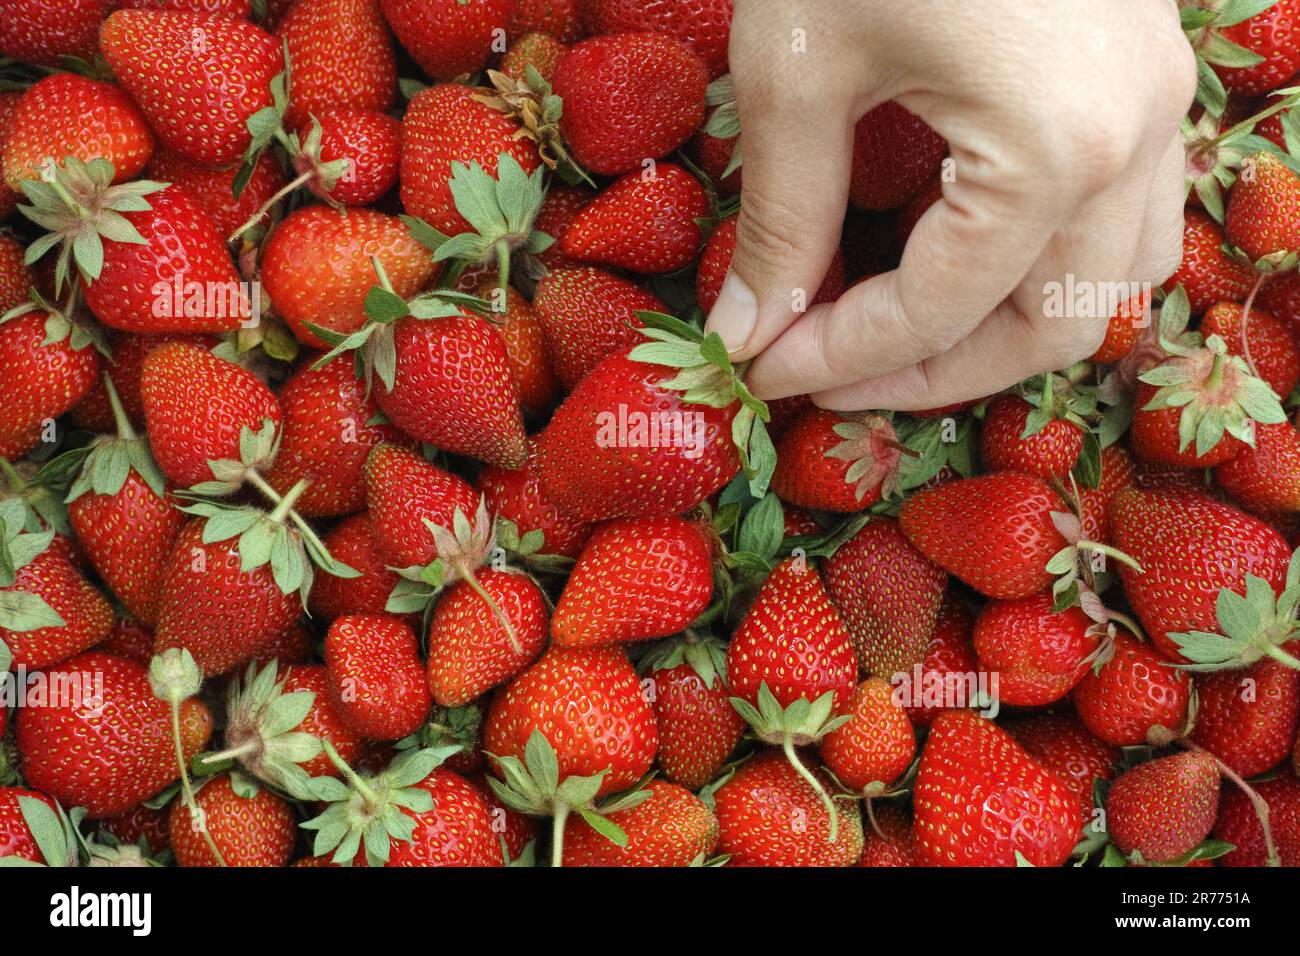 Une femme qui prend une fraise d'un grand tas de fraises biologiques fraîchement récoltées. Gros plan. Banque D'Images